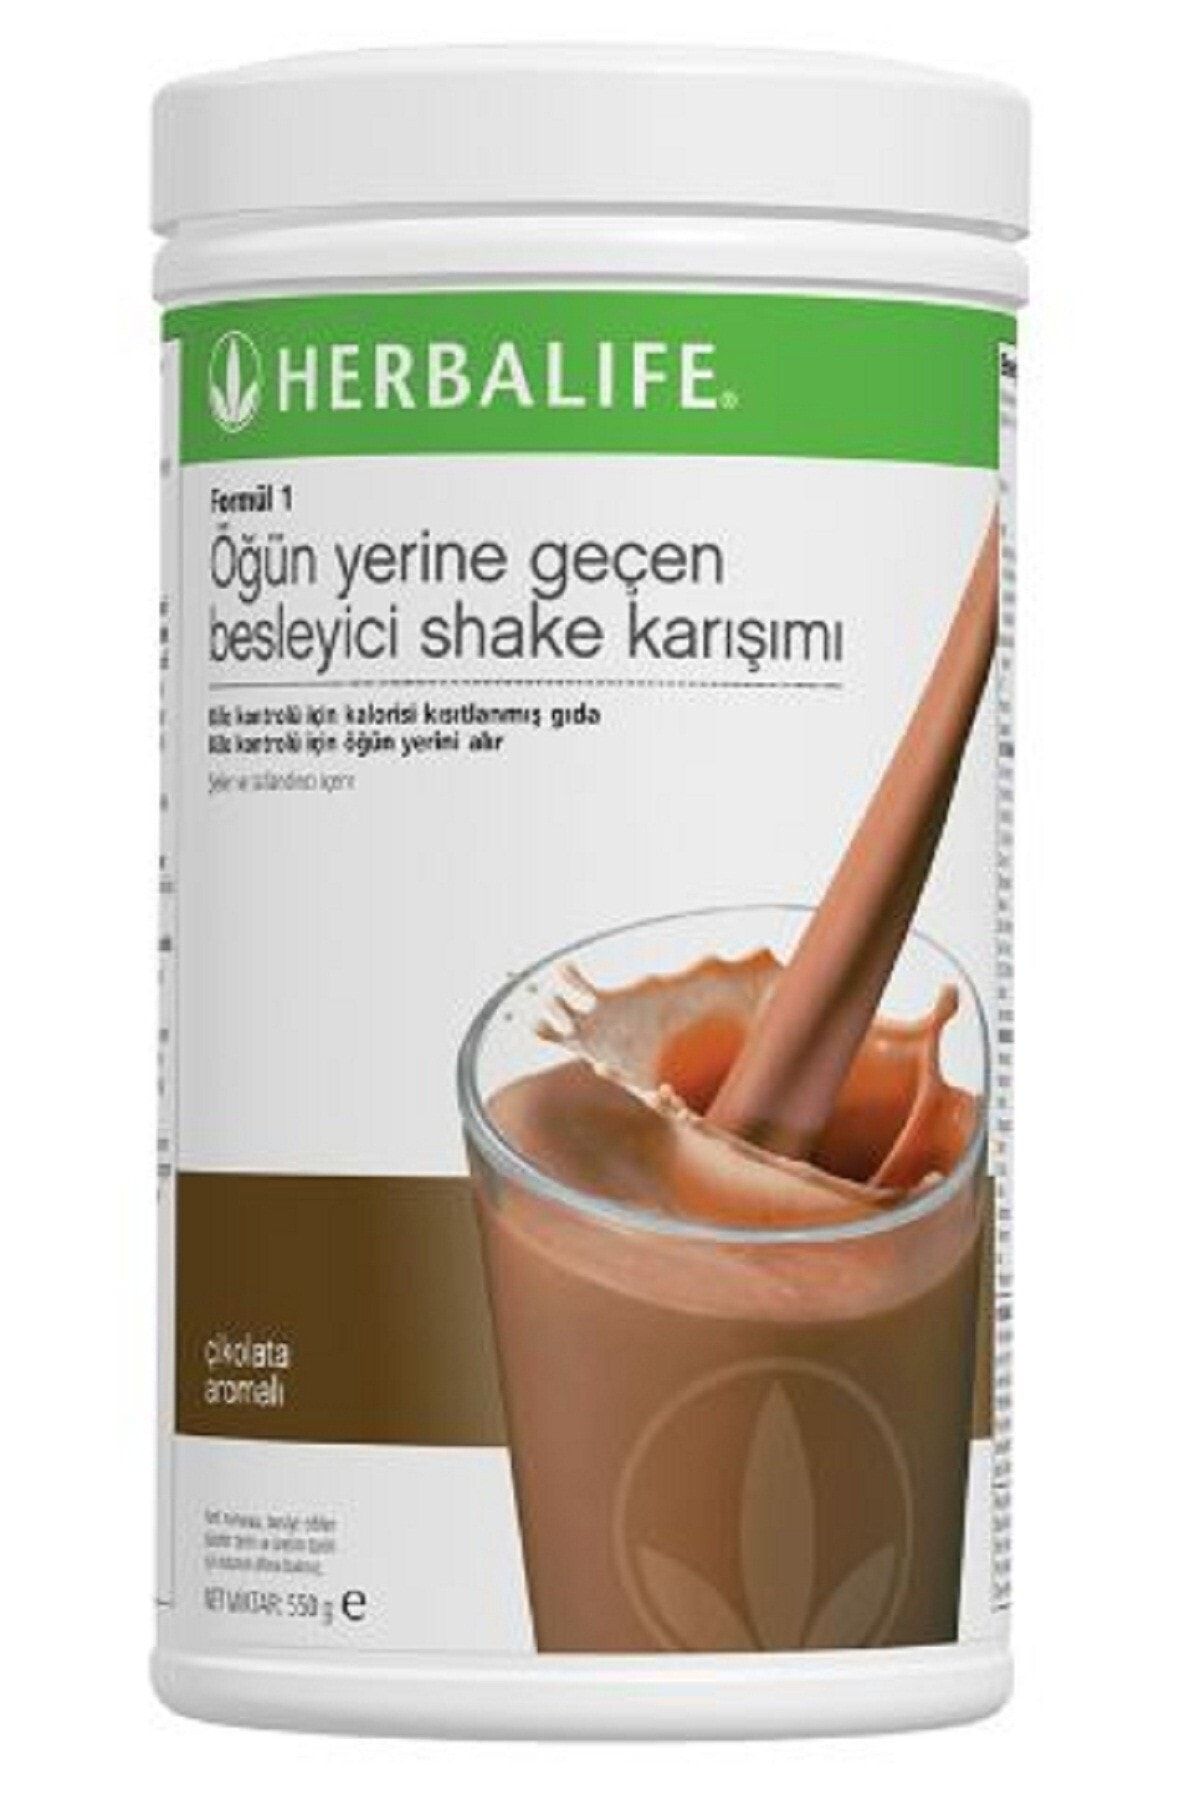 Herbalife Formül 1 Öğün Yerine Geçen Besleyici Çikolatalı Shake Karışımı